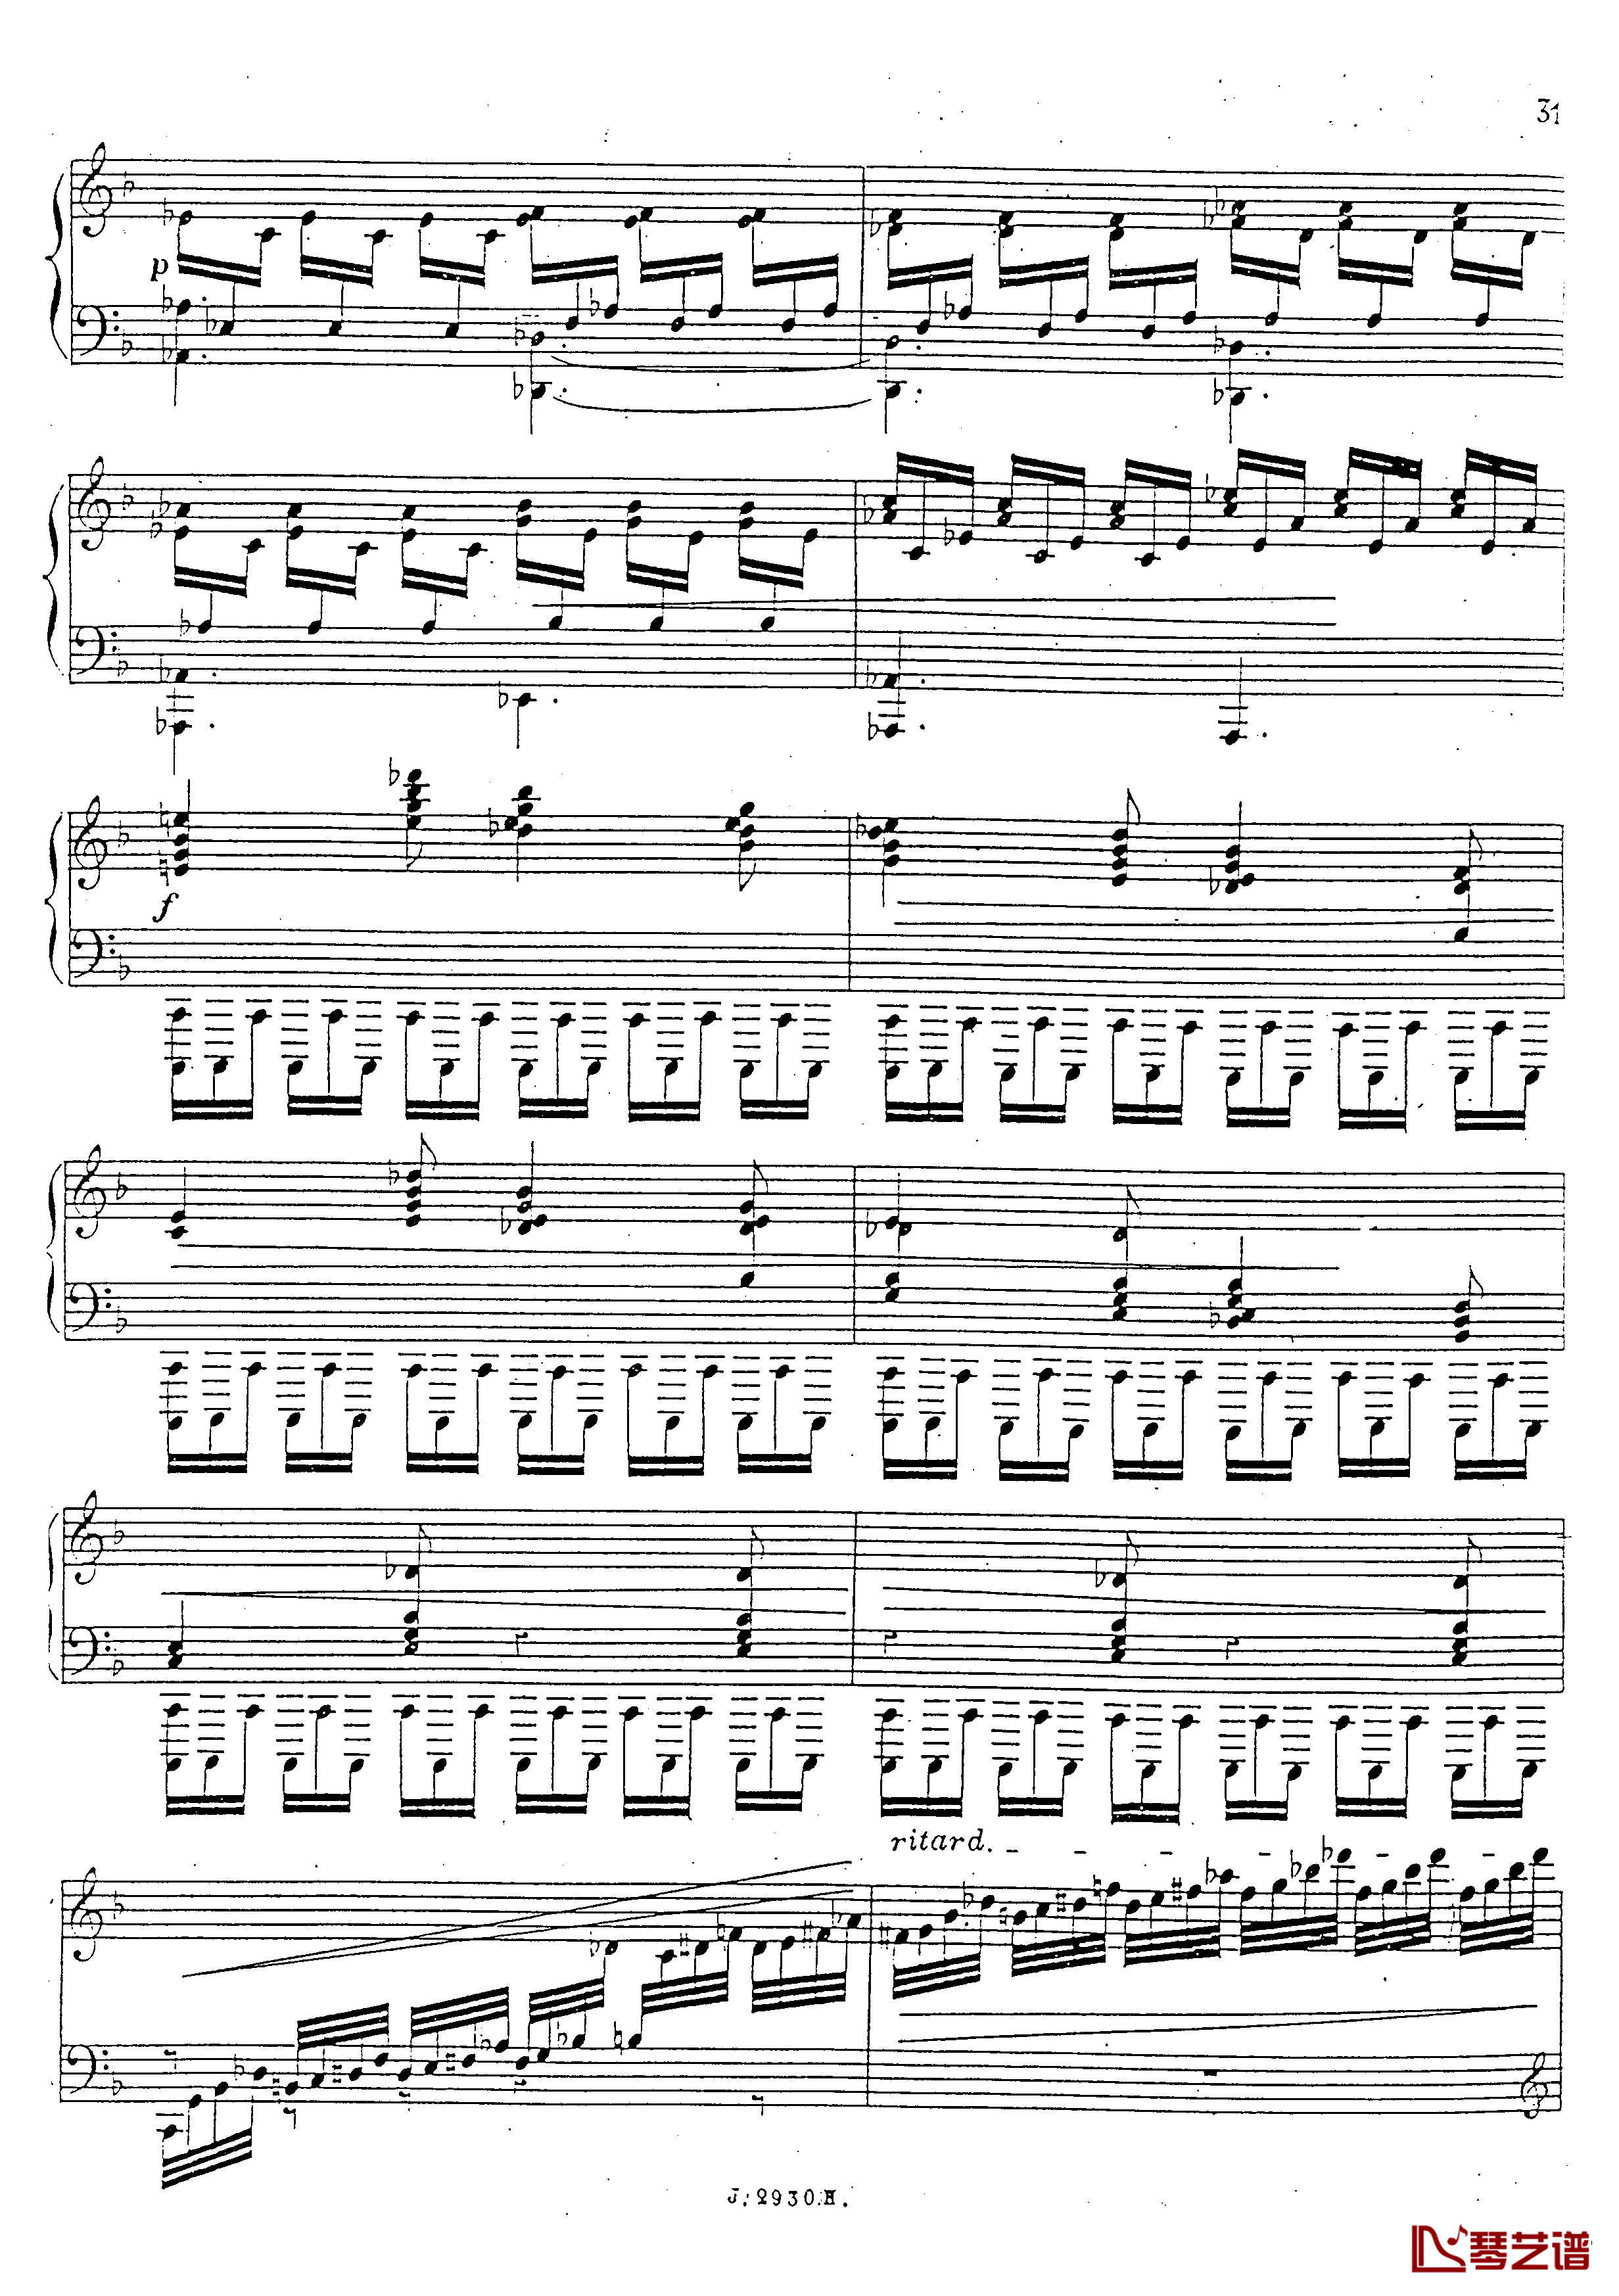 a小调第四钢琴奏鸣曲钢琴谱-安东 鲁宾斯坦- Op.10032